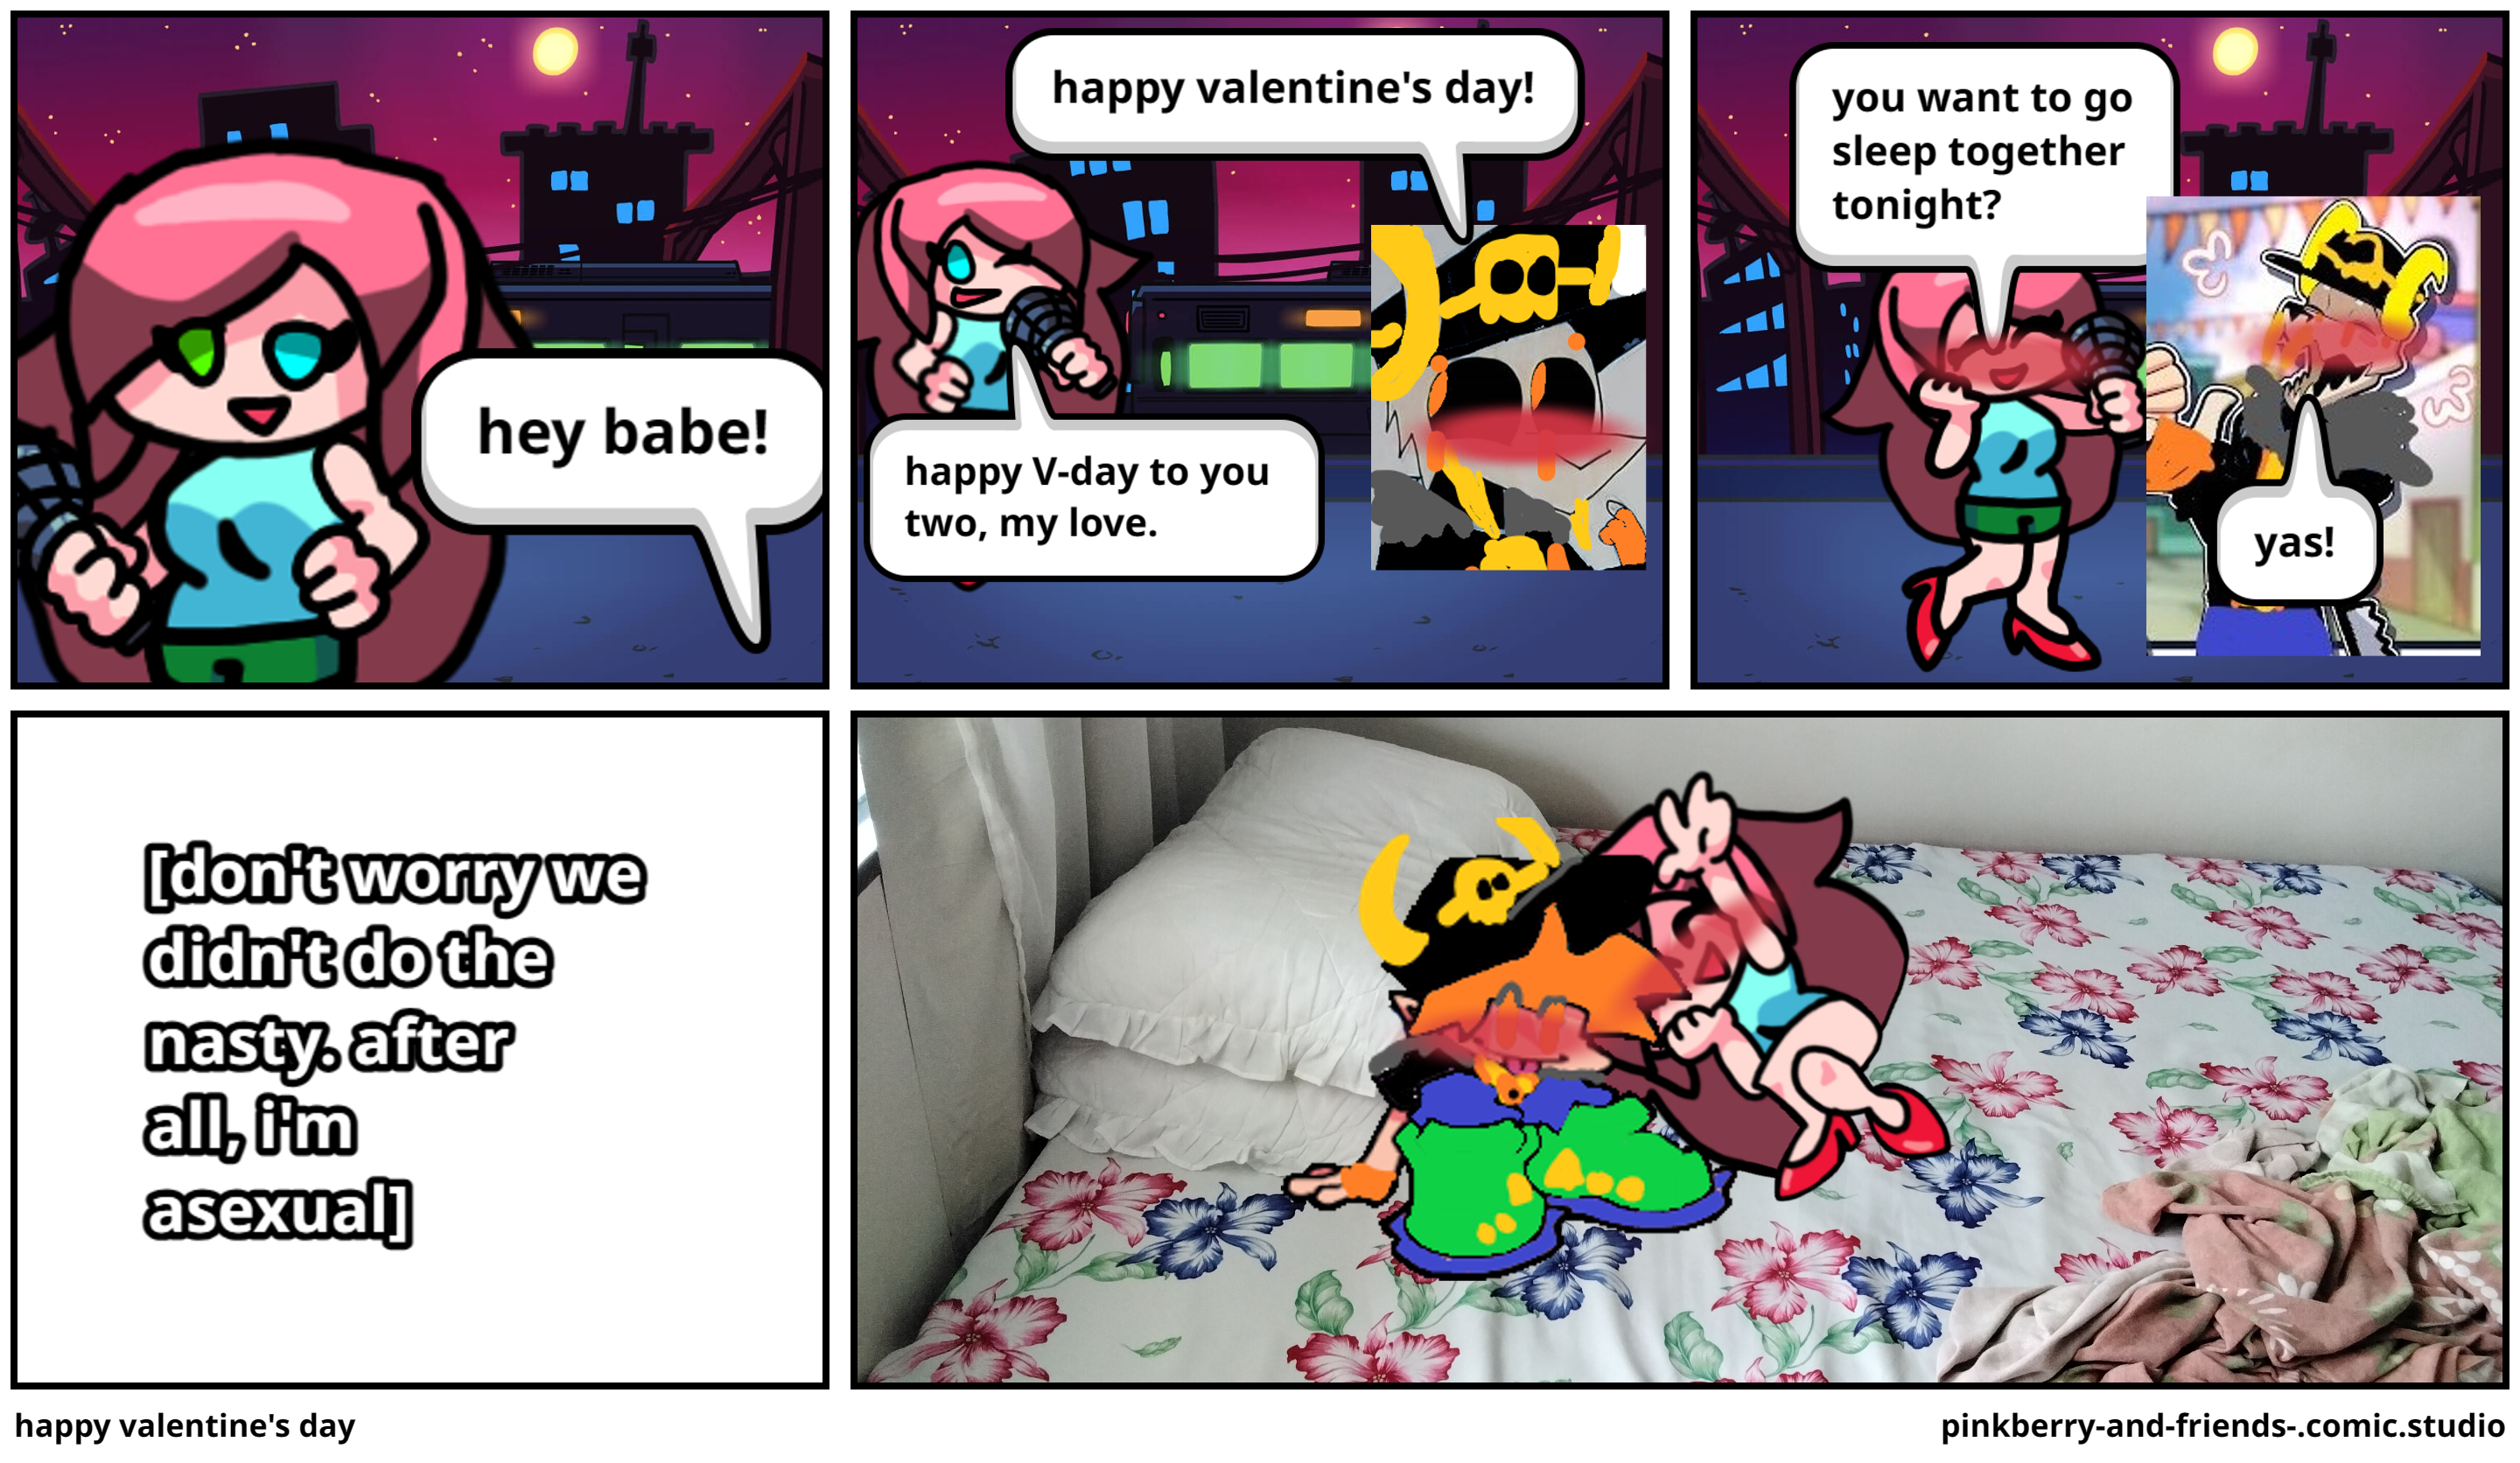 happy valentine's day